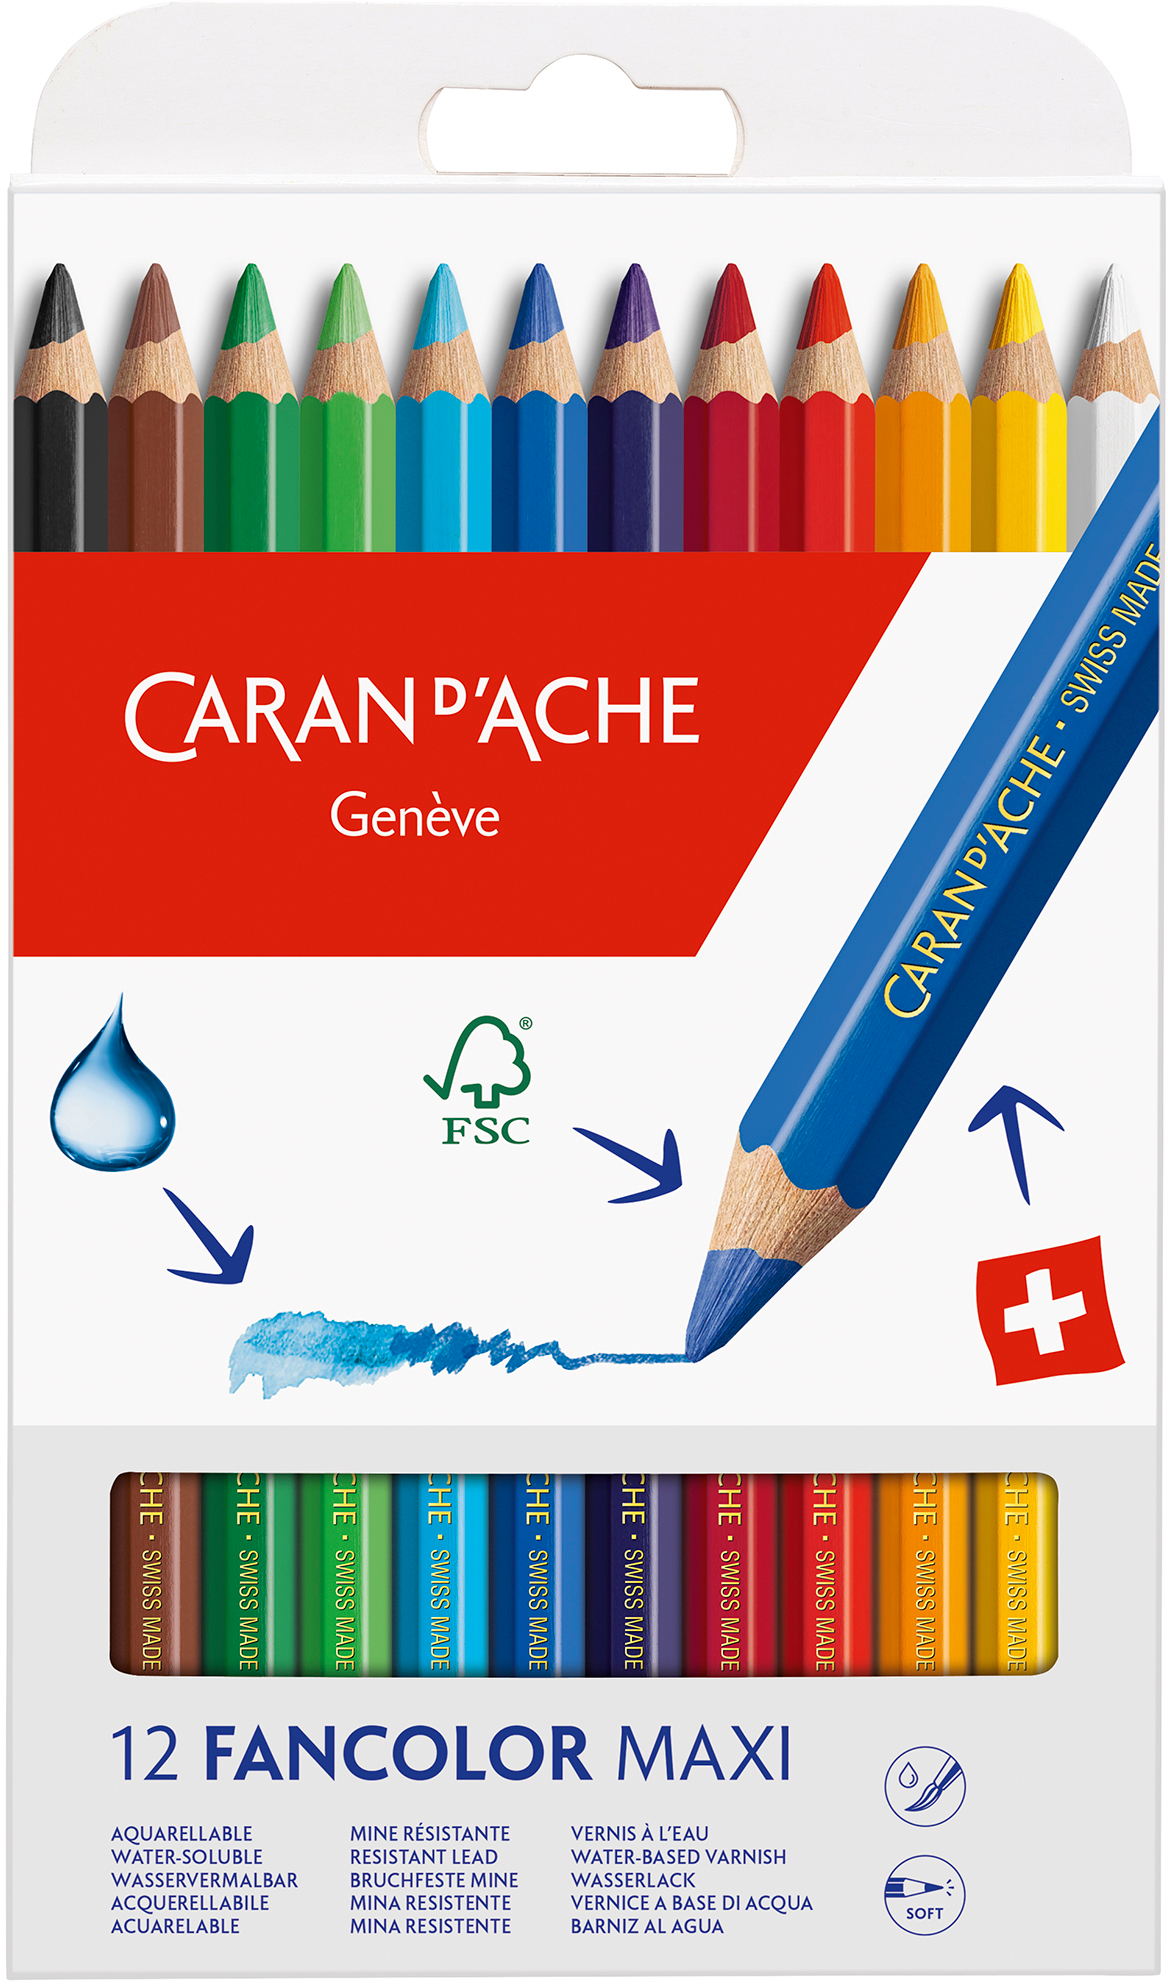 CARAN D'ACHE Farbstifte Maxi Fancolor 498.712 12 couleurs carton